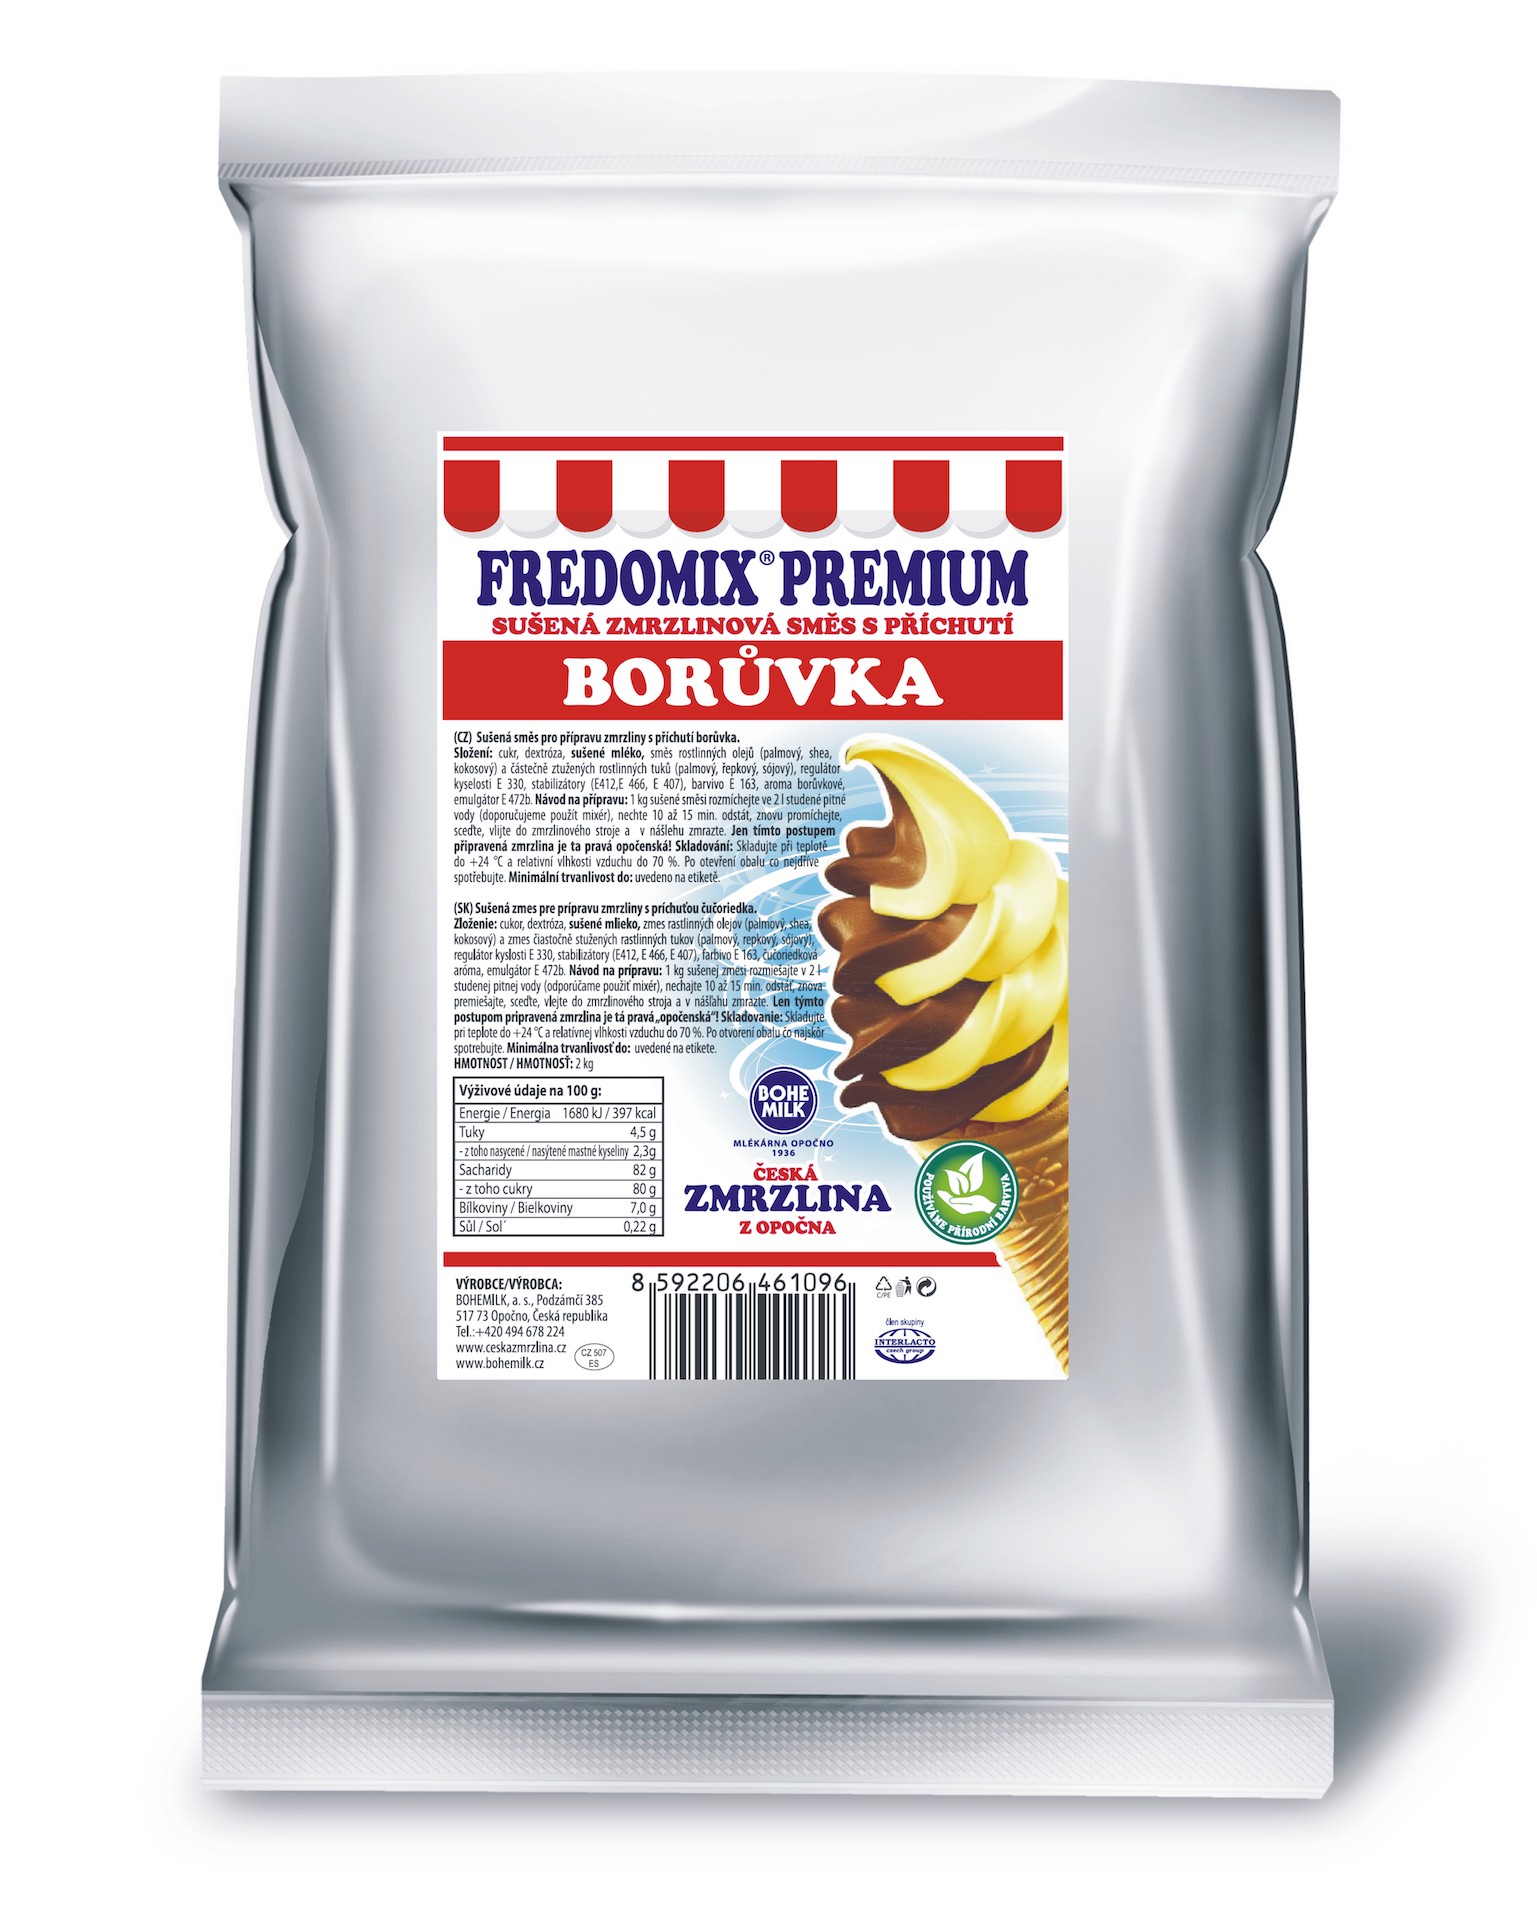 FREDOMIX PREMIUM Borůvka, 2kg